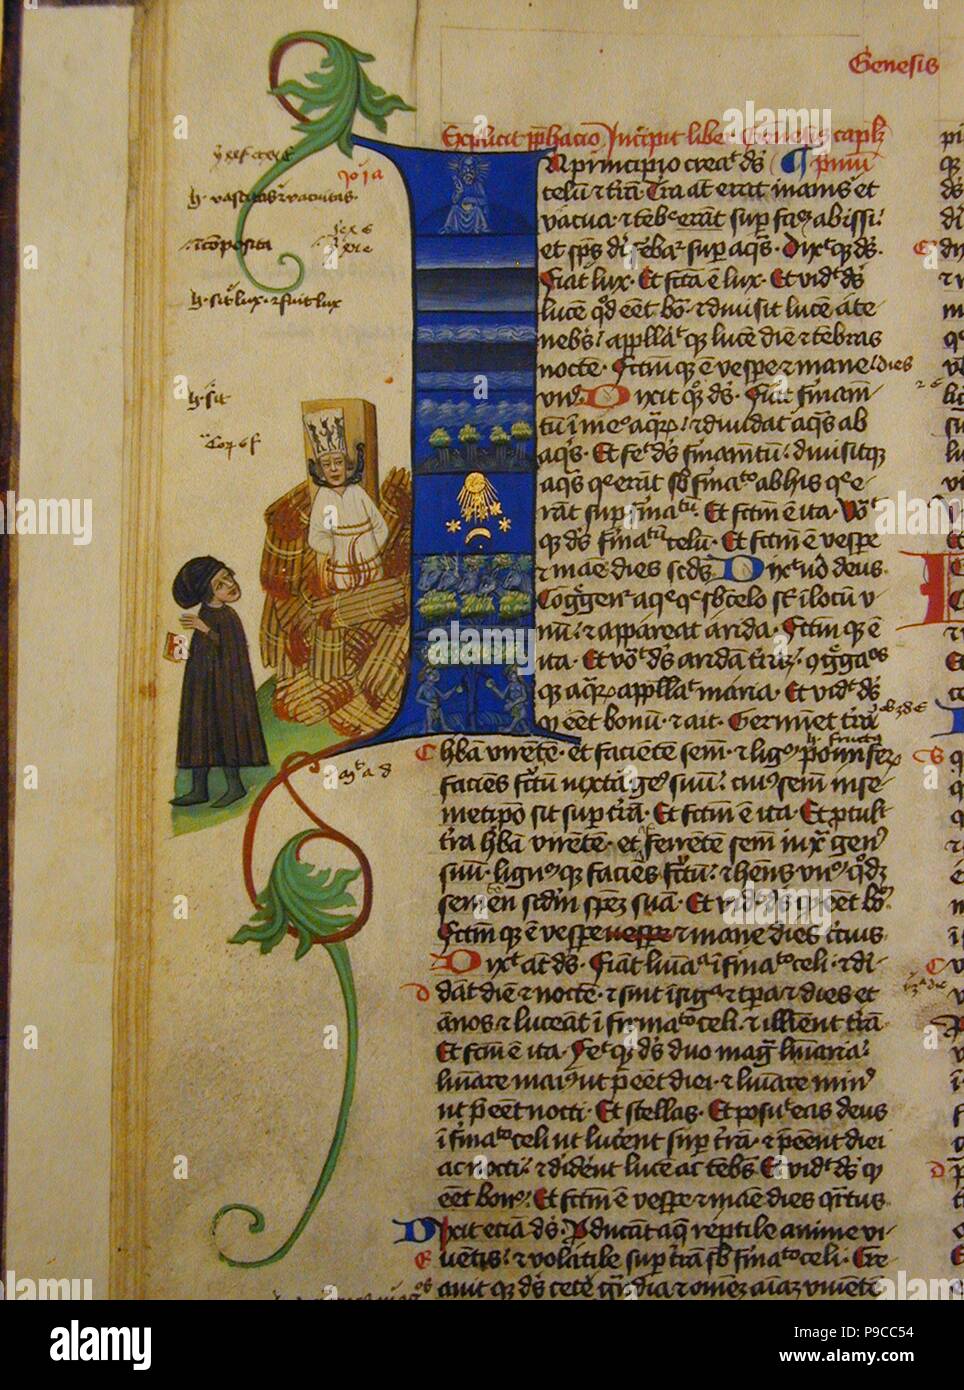 The burning of John Hus (From the Martinitz Bible). Museum: Knihovna Akademie, Prague. Stock Photo